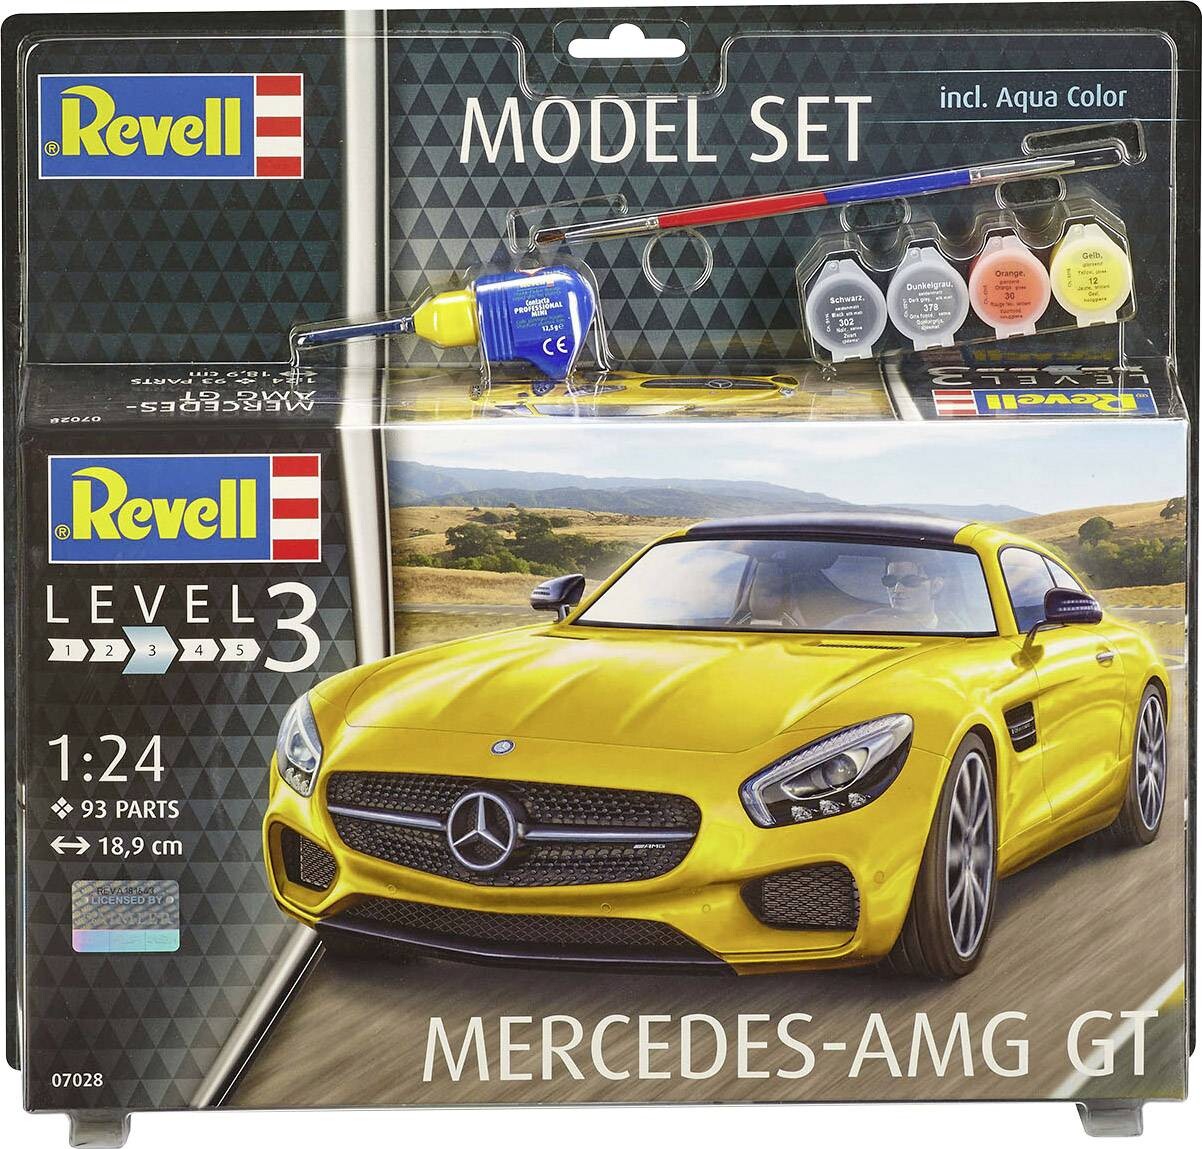 Billede af Revell - Mercedes Amg Gt Byggesæt Inkl. Maling - 1:24 - Level 3 - 67028